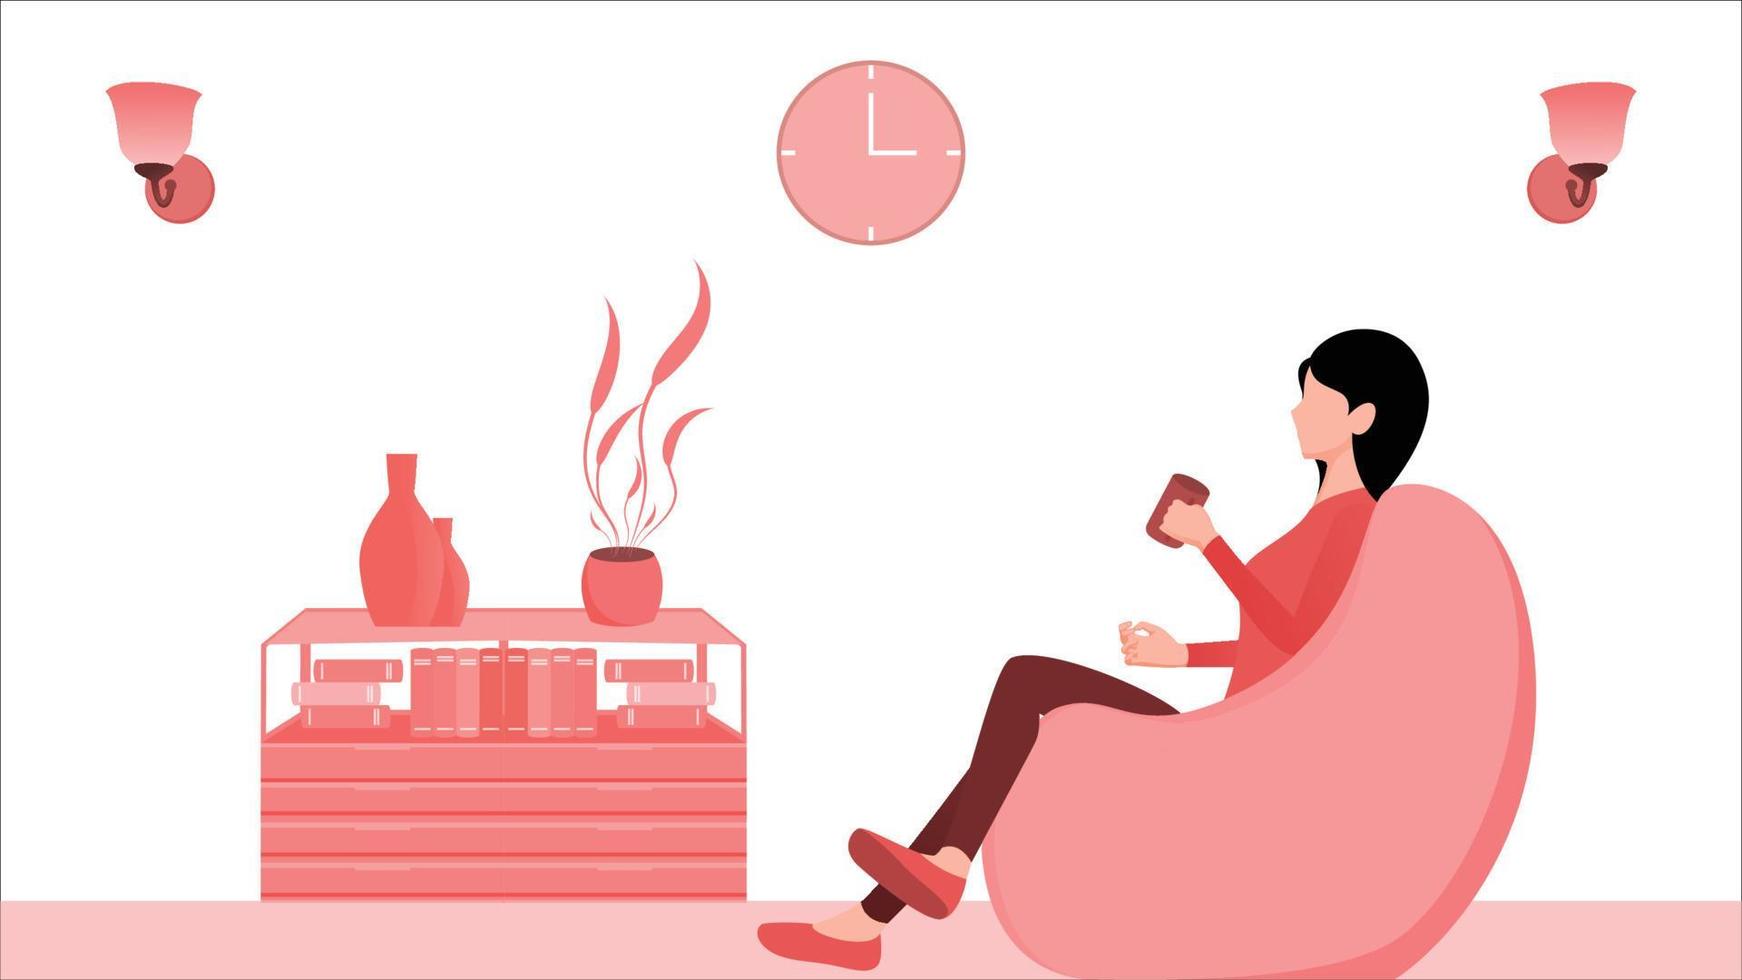 kvinnor som dricker kaffe på vilstol eller sittsäck vektorillustration på vardagsrum interiör bakgrund vektor